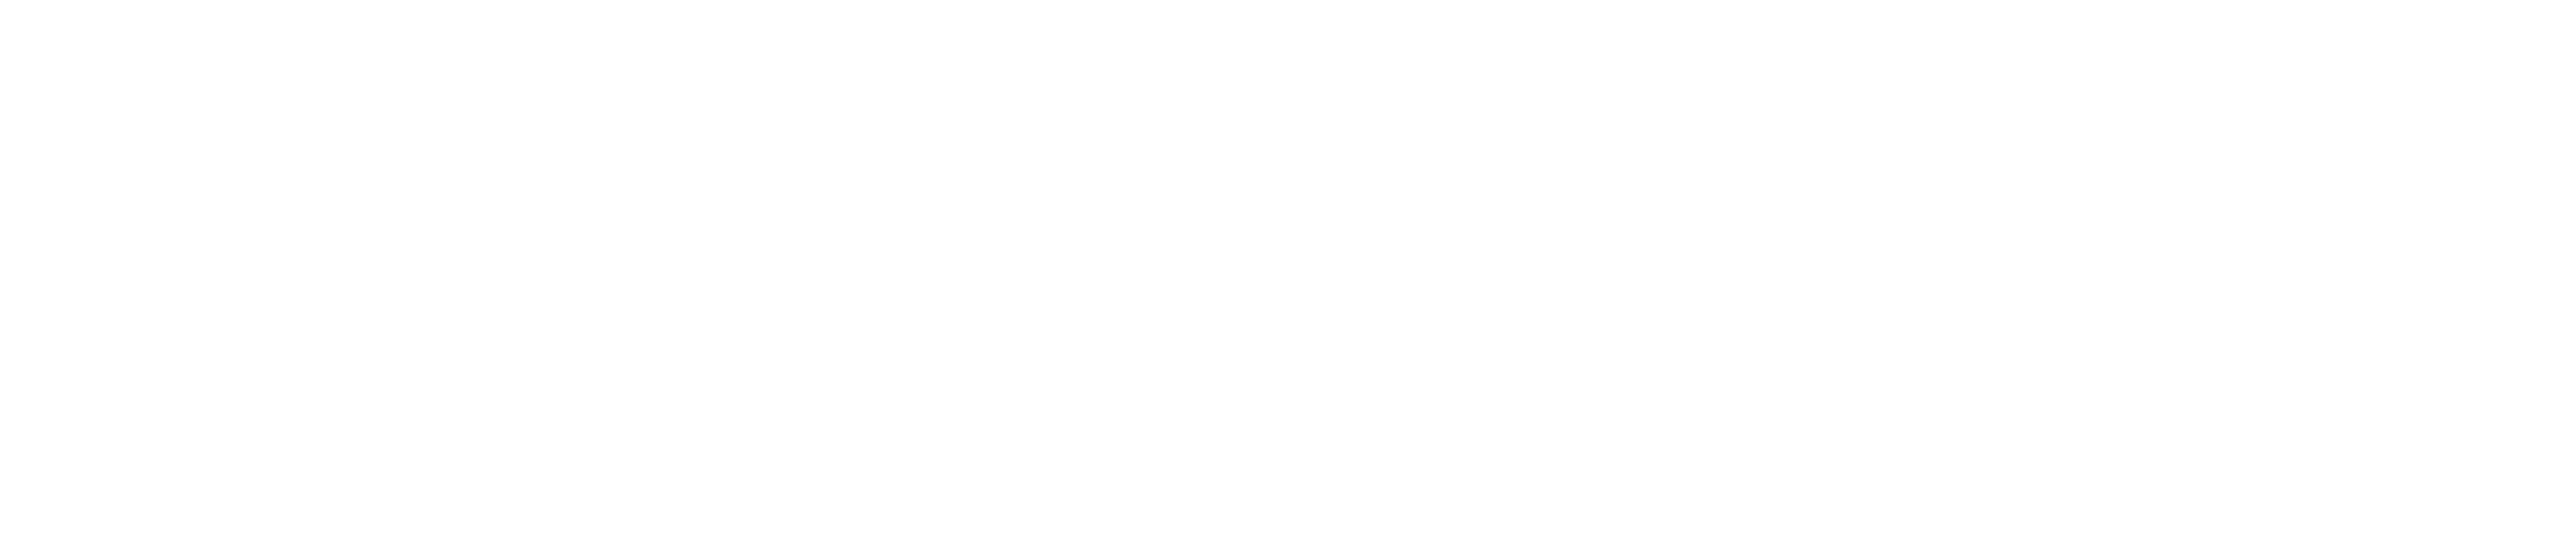 FH Foglim Hospice logo